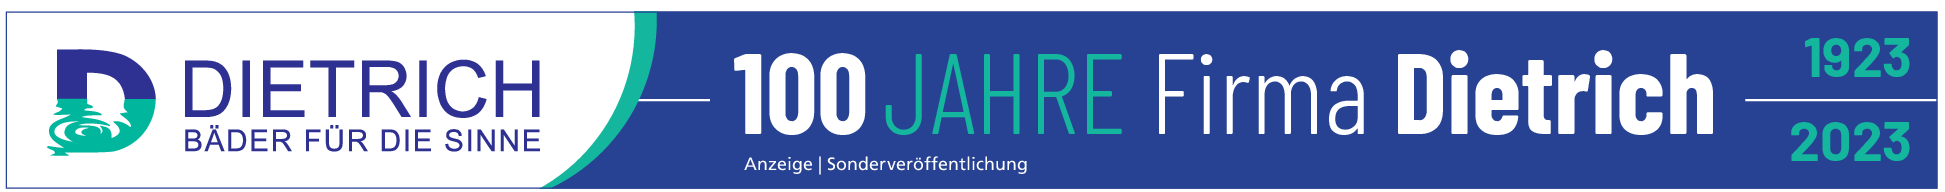 Dietrich - Bäder für die Sinne in Frankfurt: Firma in vierter Generation